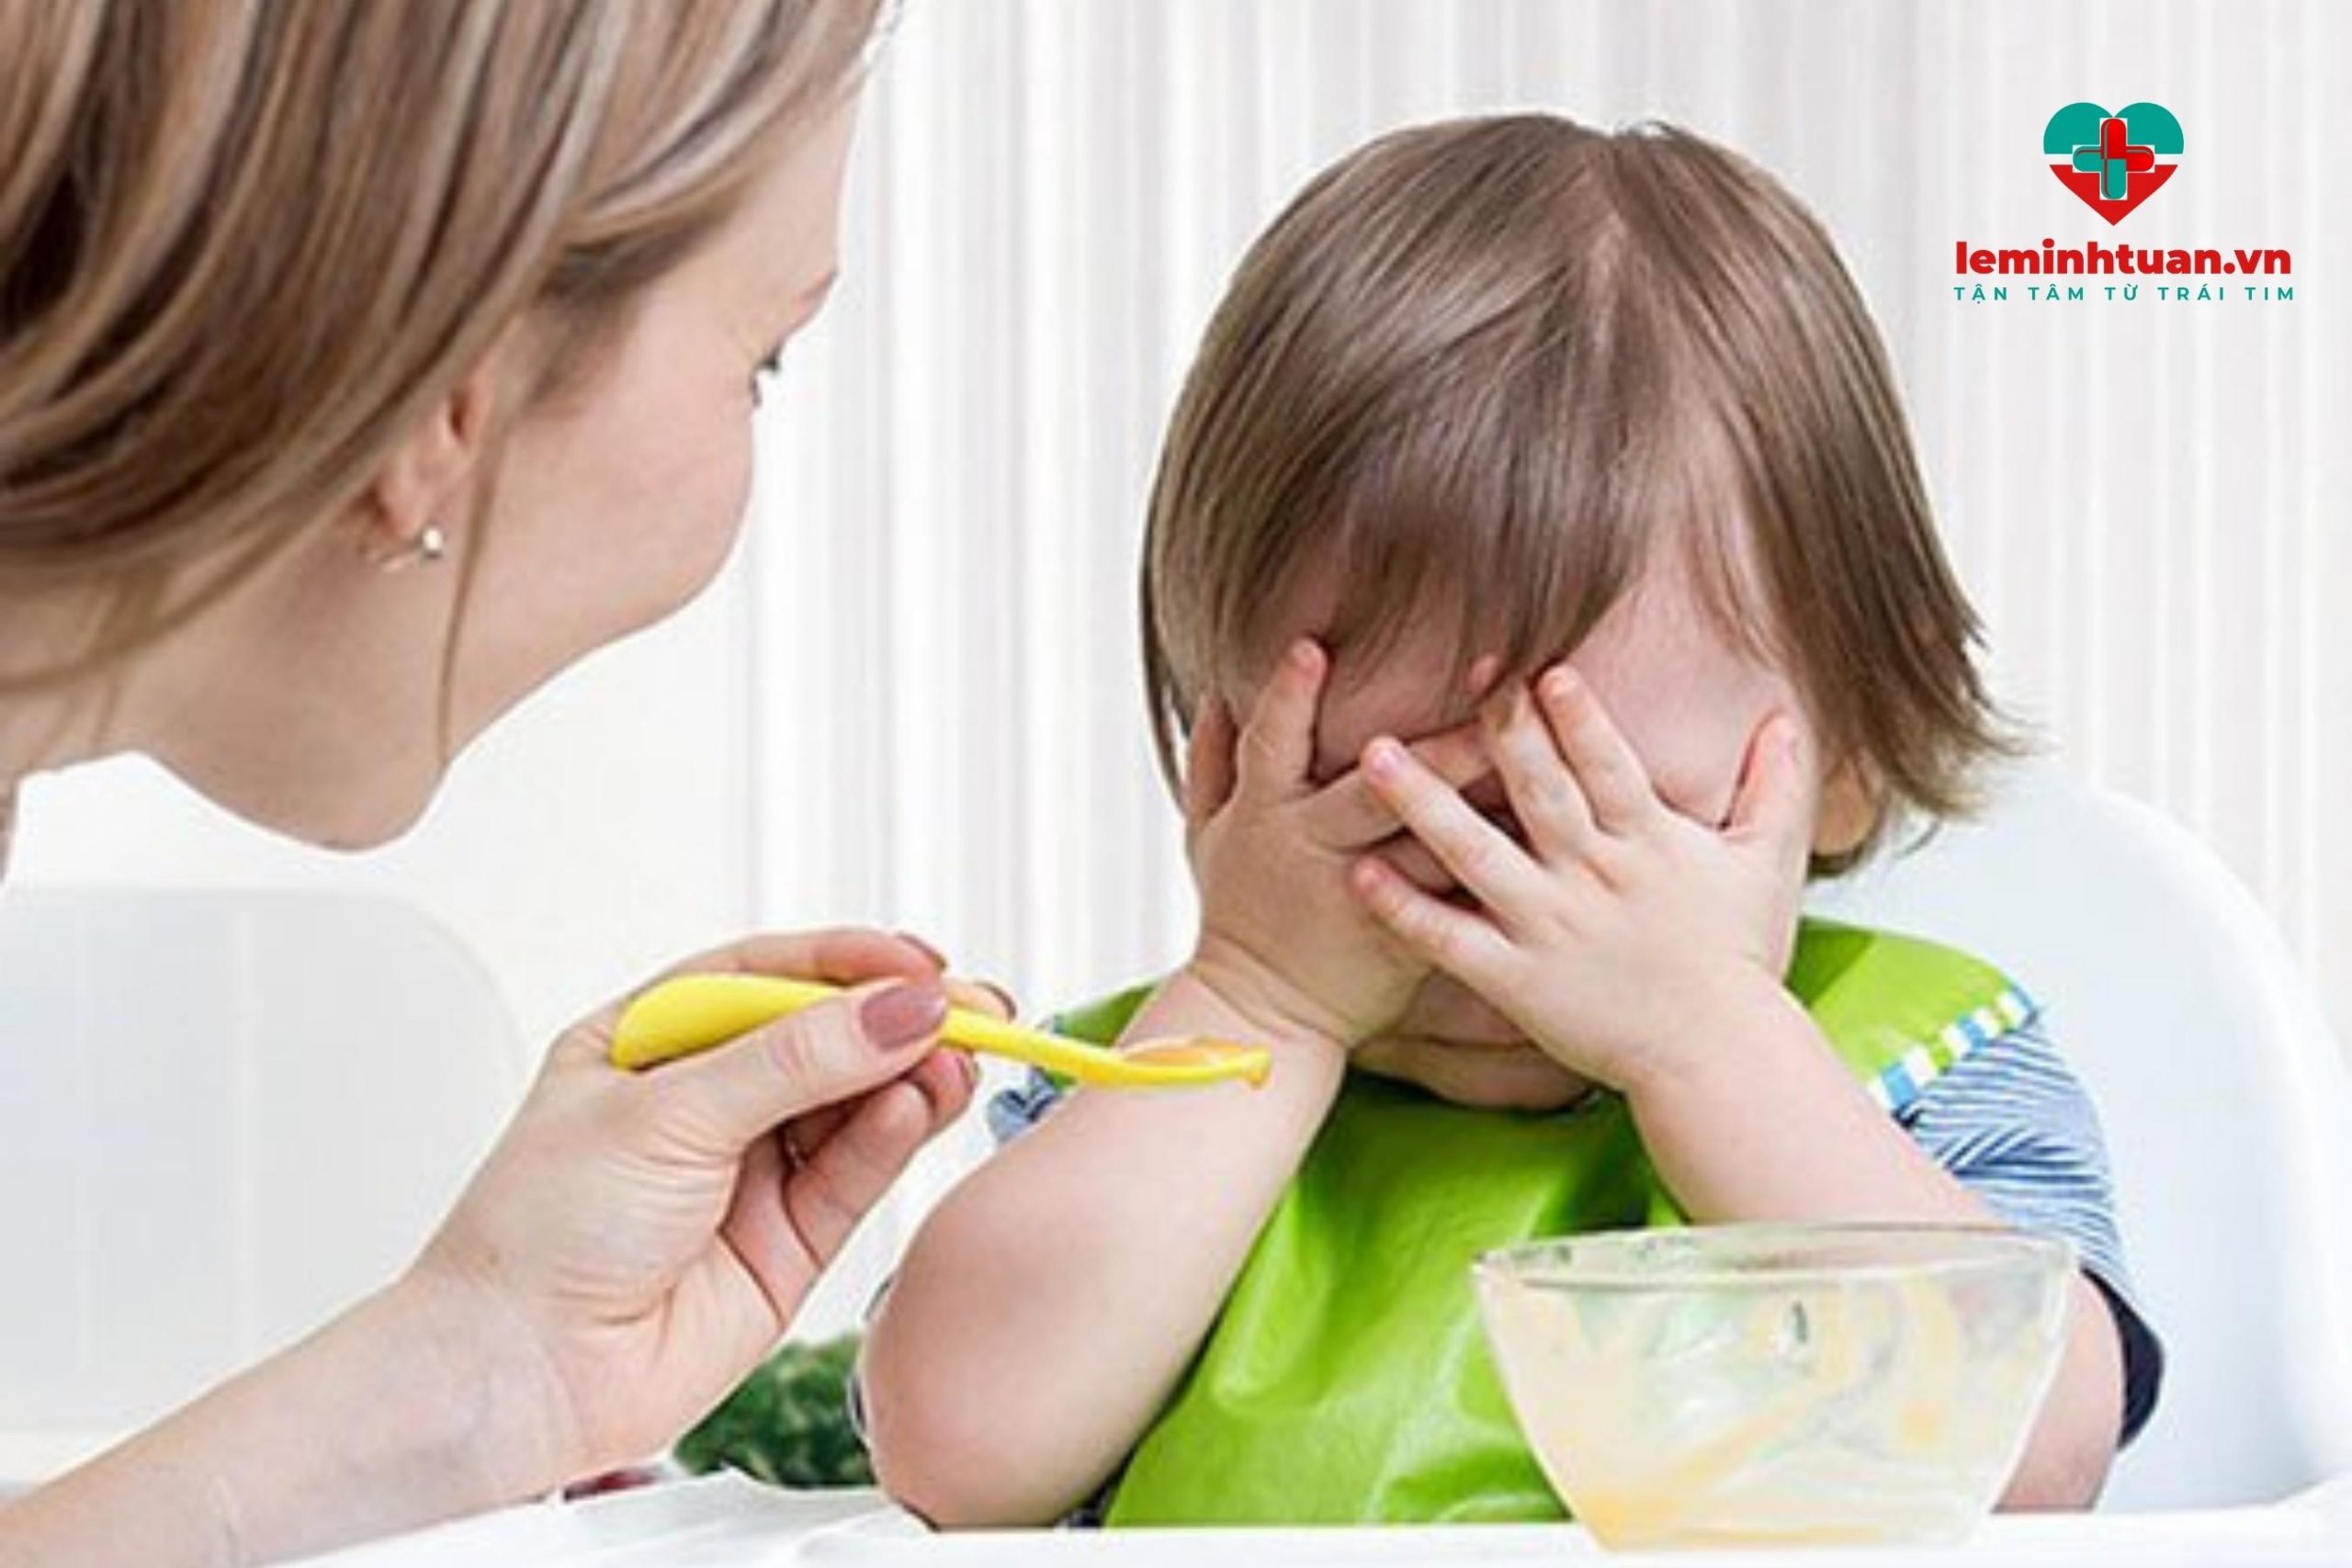 Trẻ biếng ăn chậm tăng cân do con gặp các vấn đề về tiêu hóa 